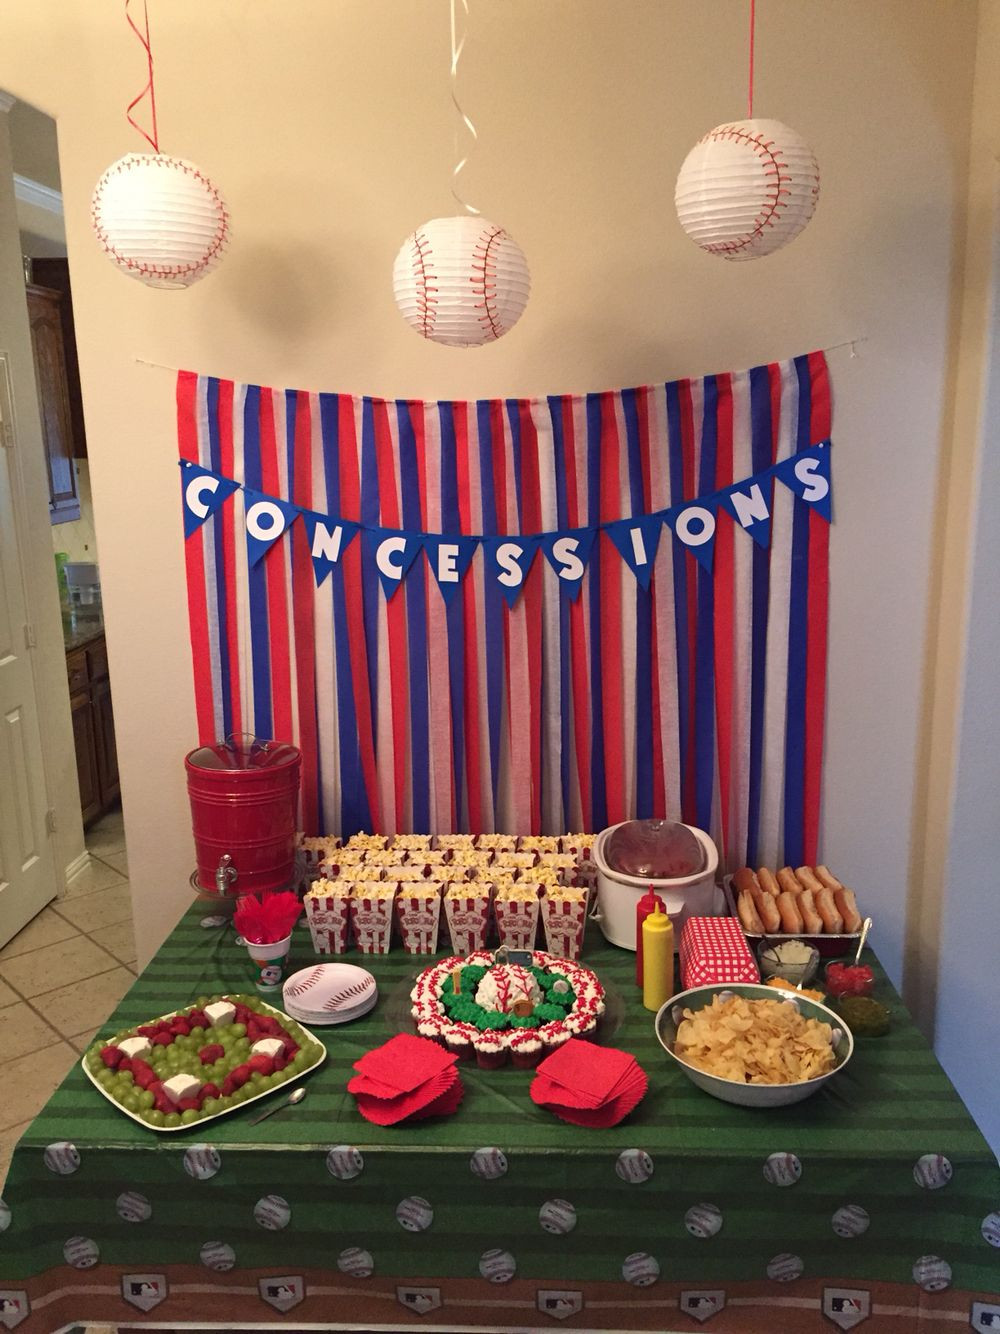 Baseball Themed Birthday Party Ideas
 Baseball themed Birthday party